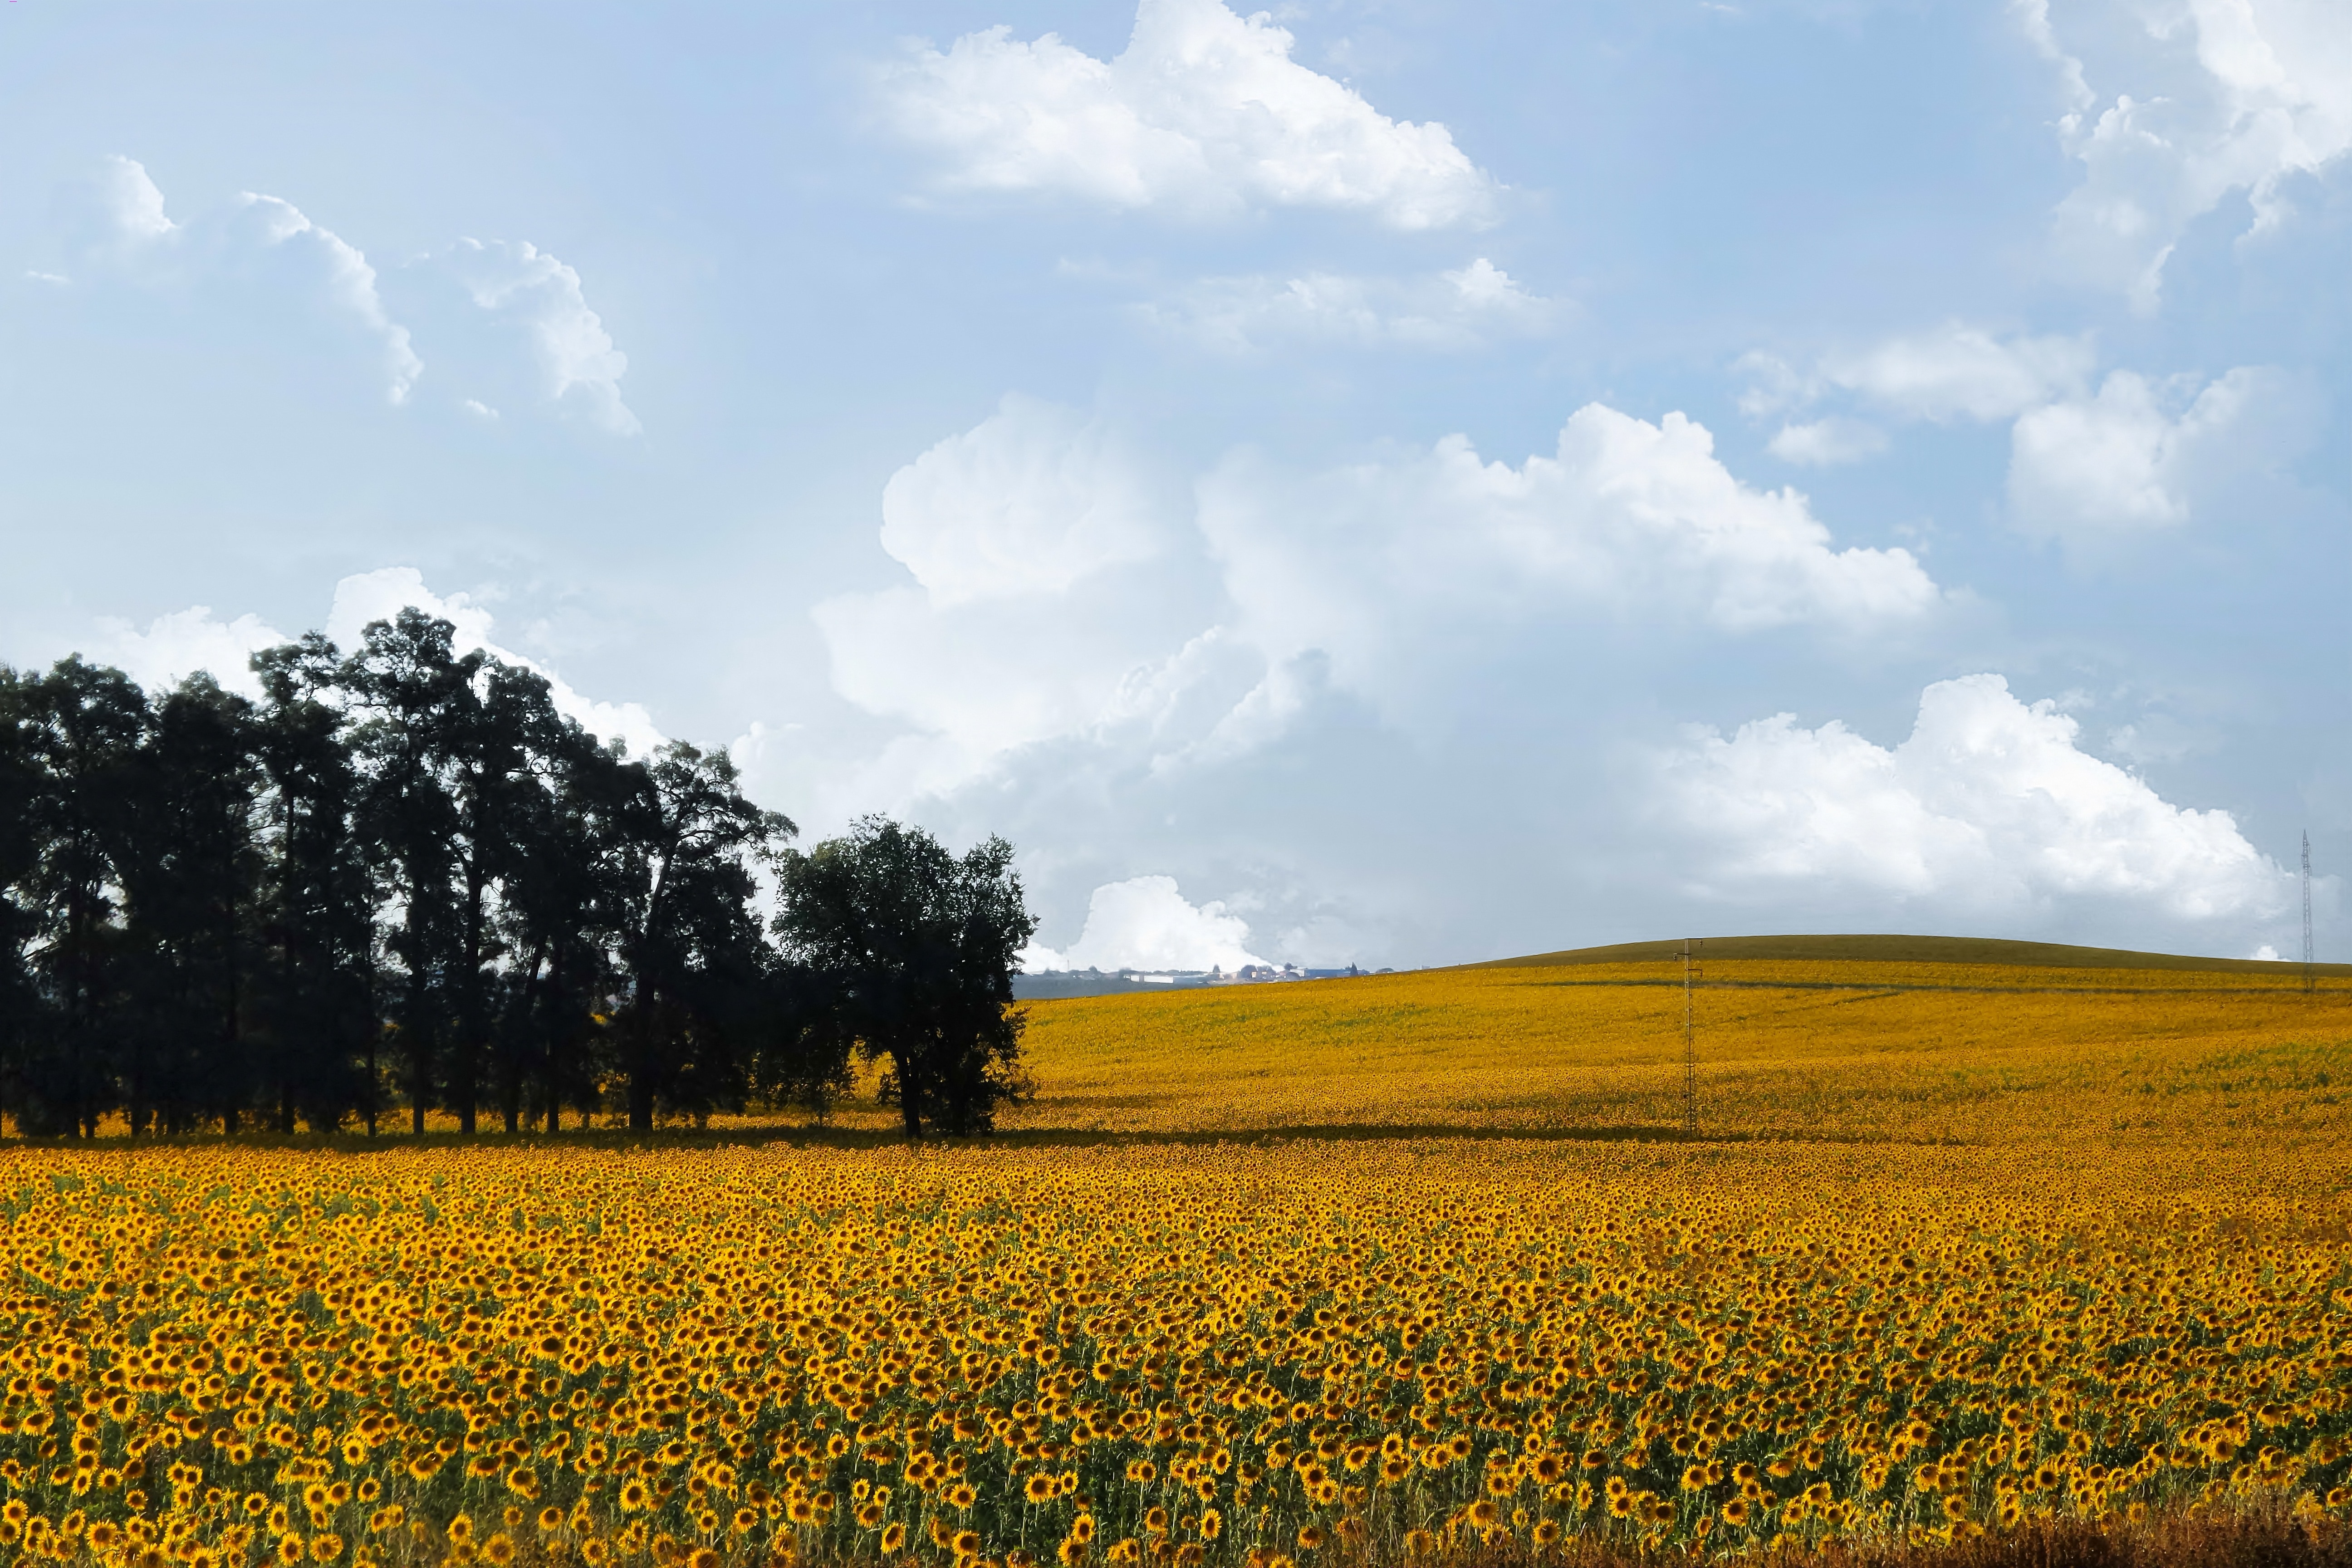 yellow sunflower fields